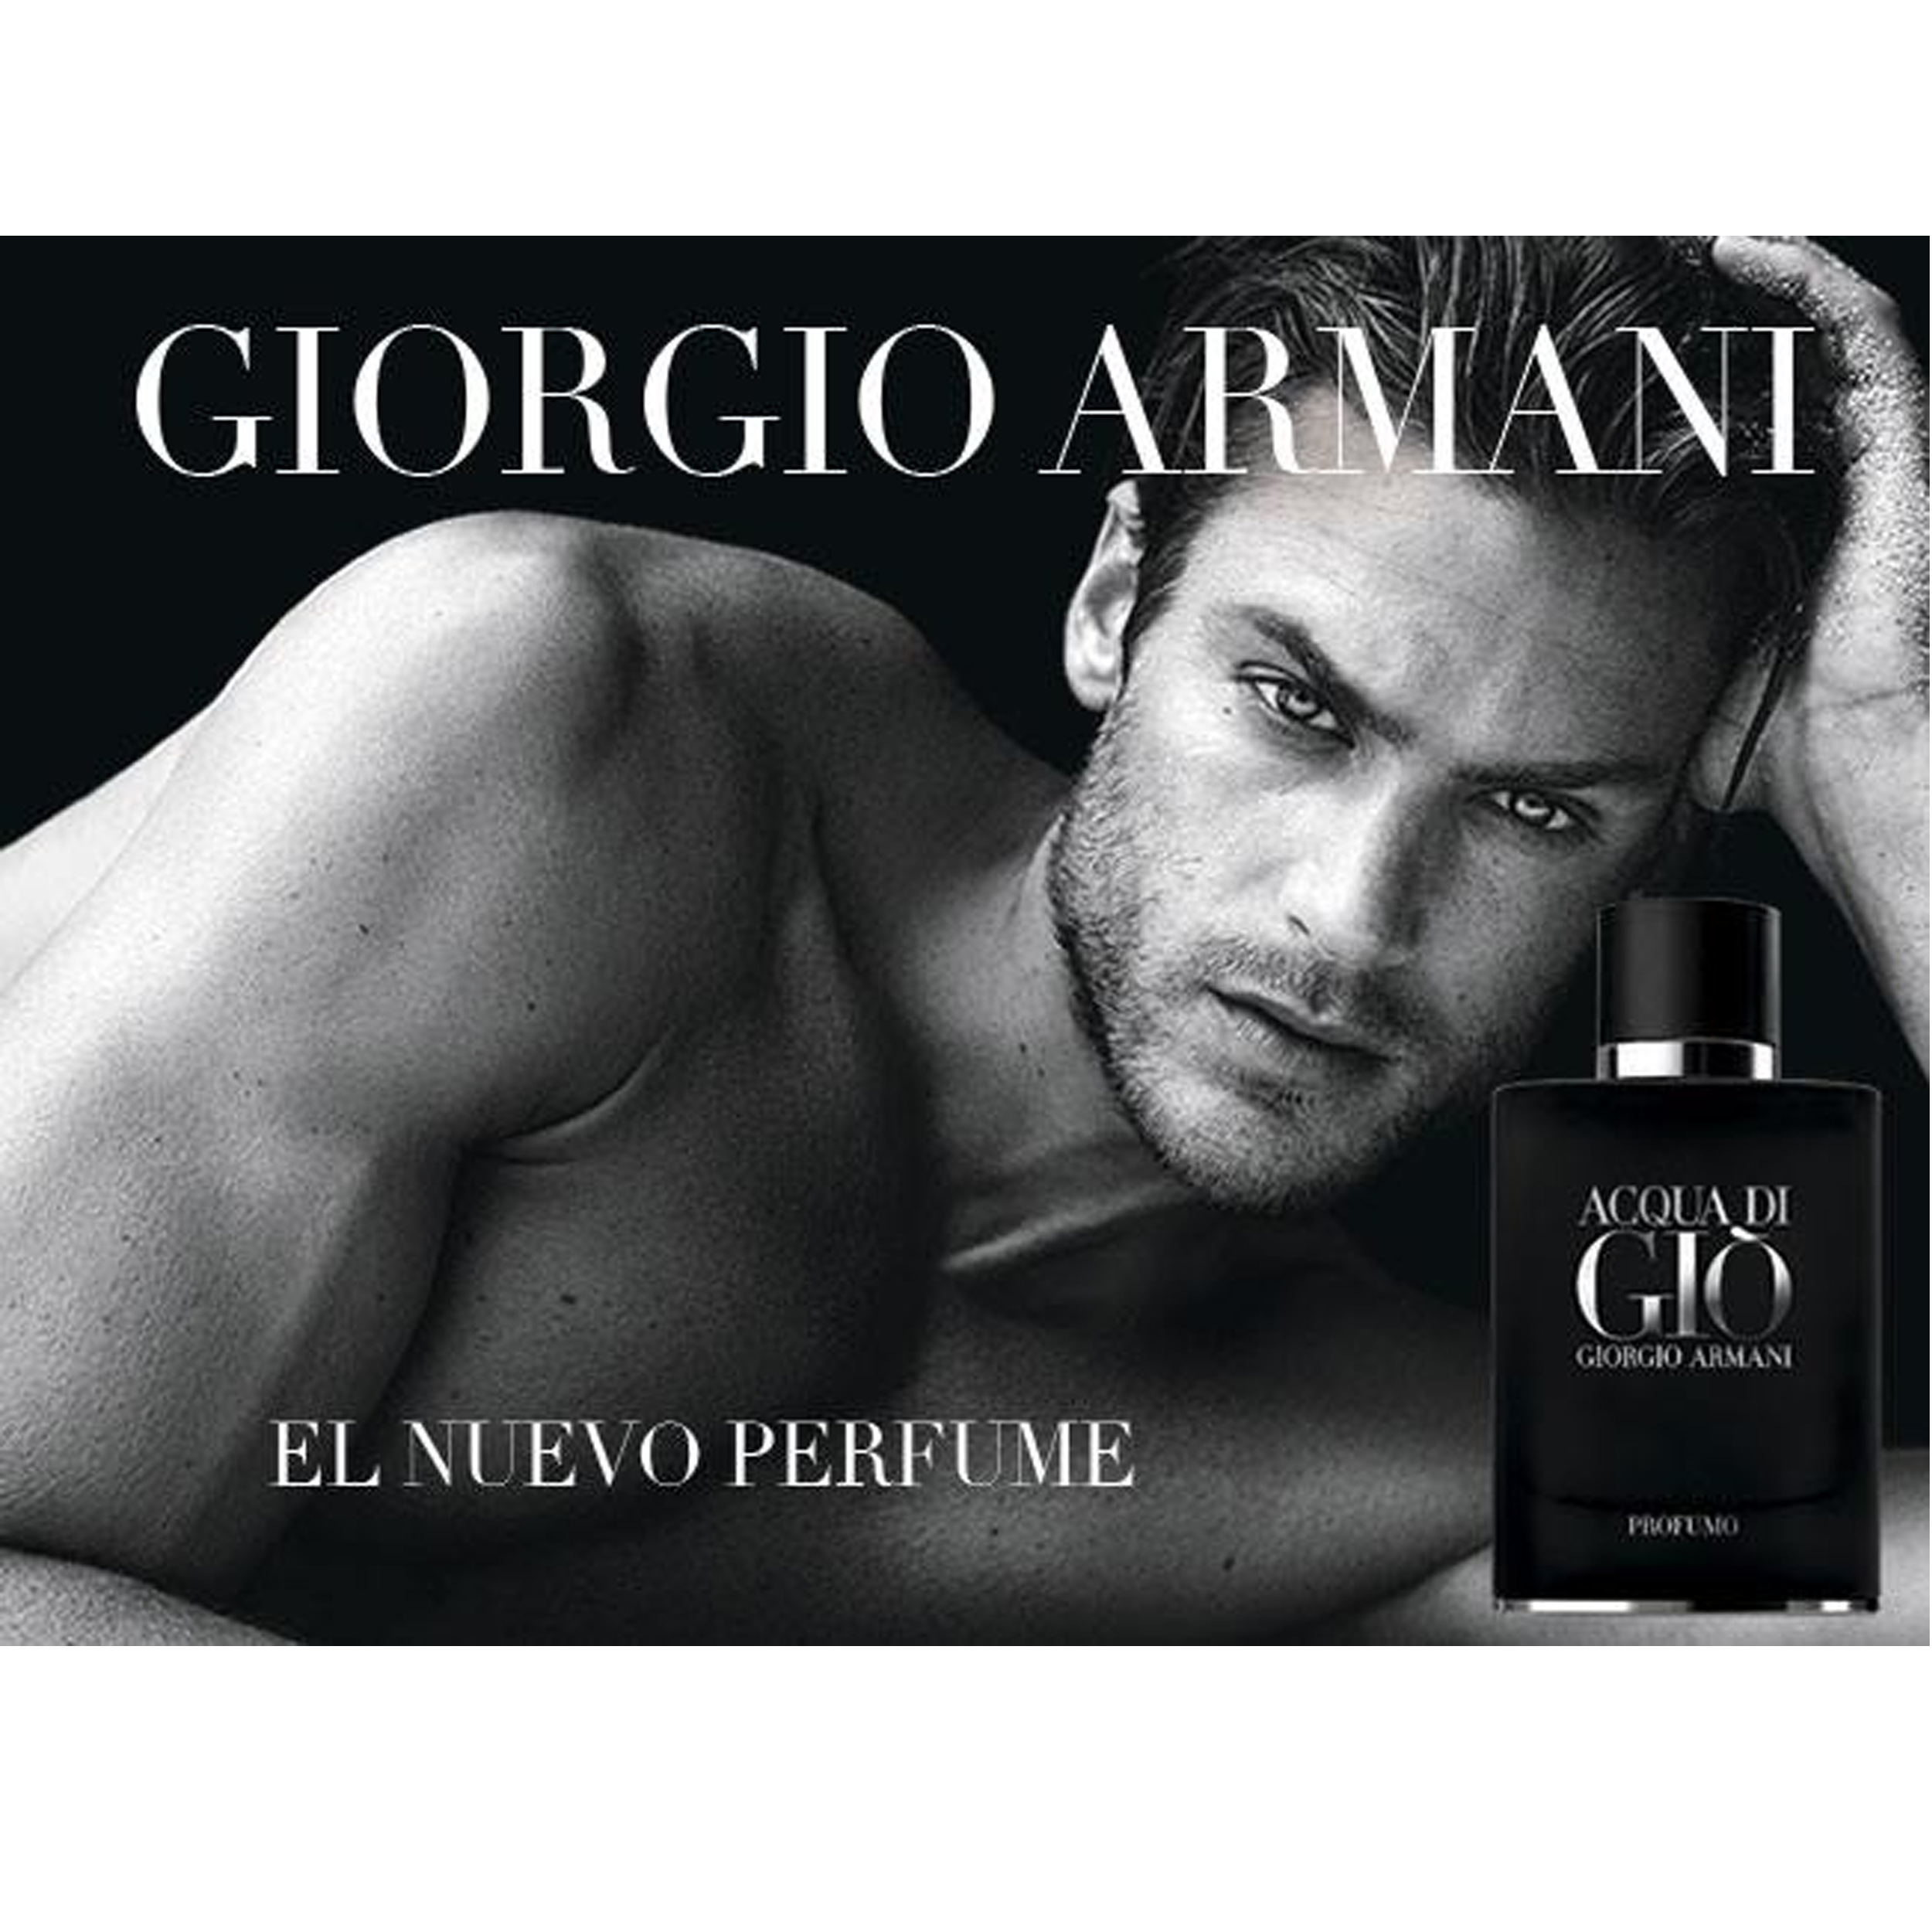 Acqua di Giò Profumo Giorgio Armani (Perfume Replica Con Fragancia Importada)- Hombre